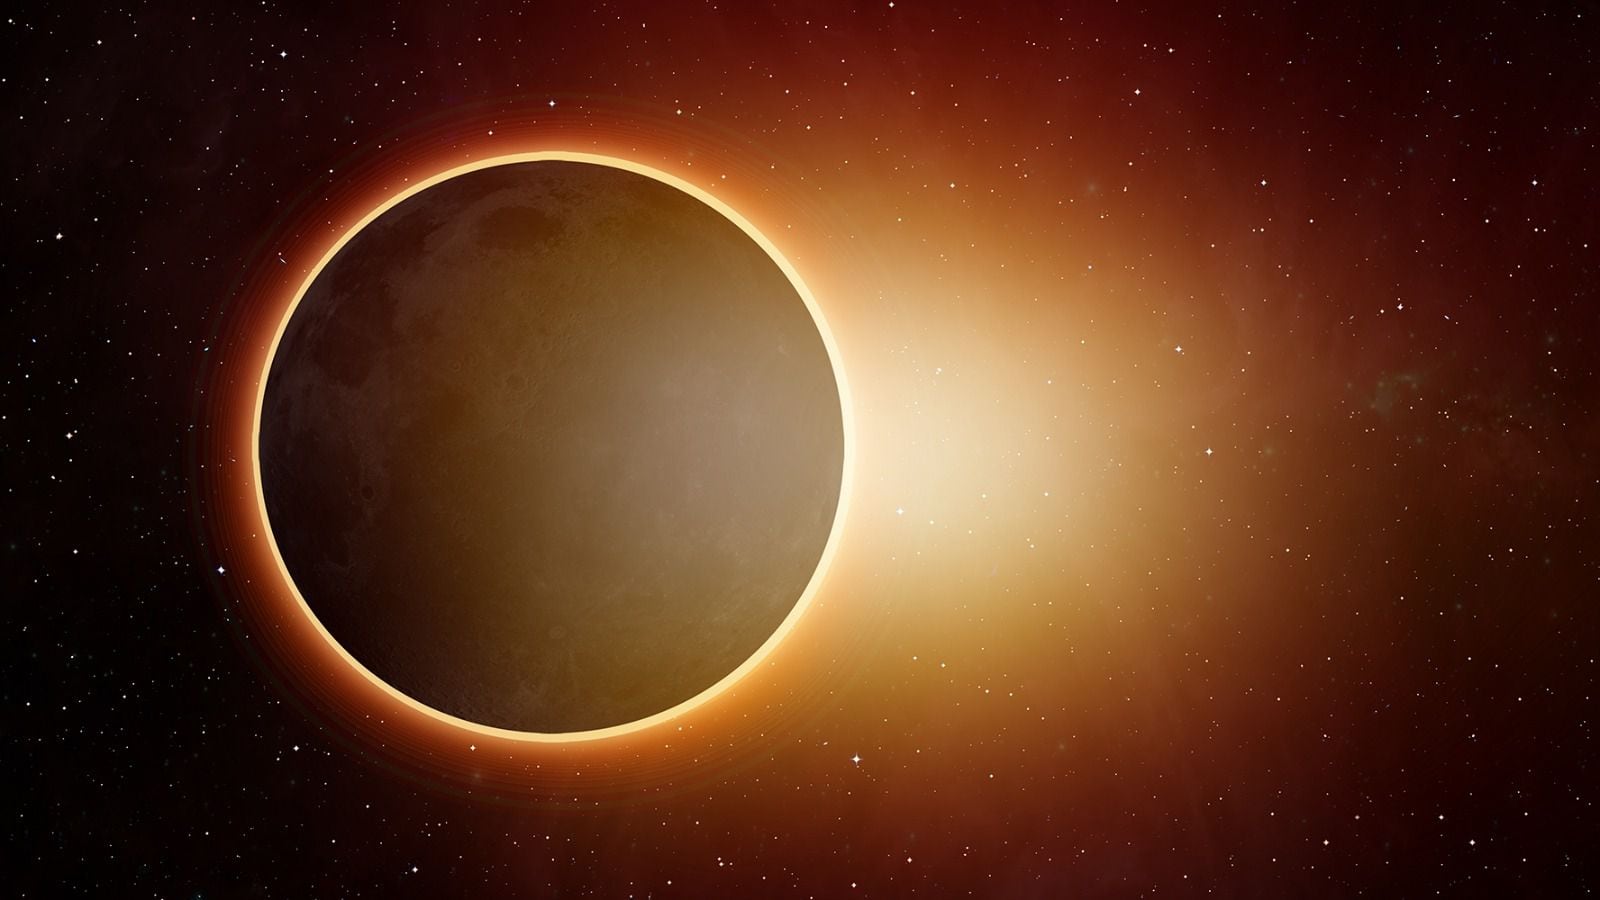 La Luna tapará al Sol, pero no lo va a cubrir por completo, generando un 'anillo de fuego' visible.